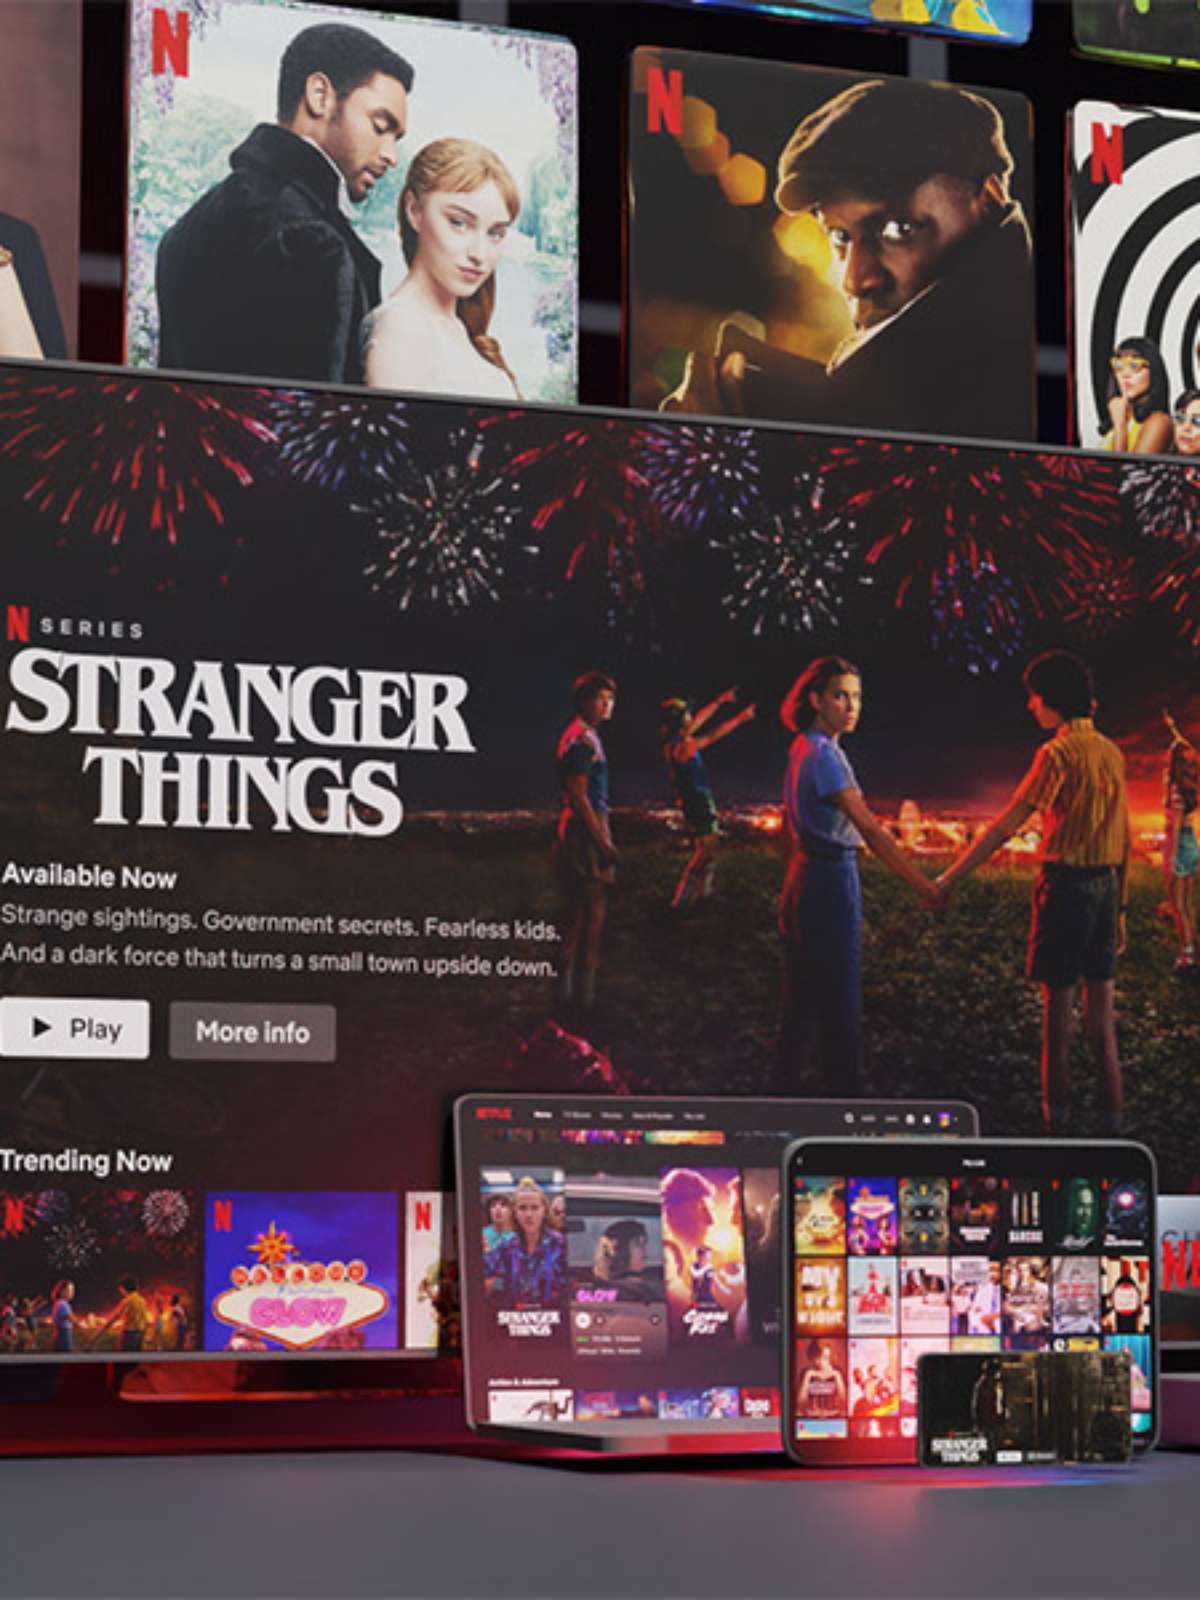 O que muda na Netflix com a cobrança pelo compartilhamento de